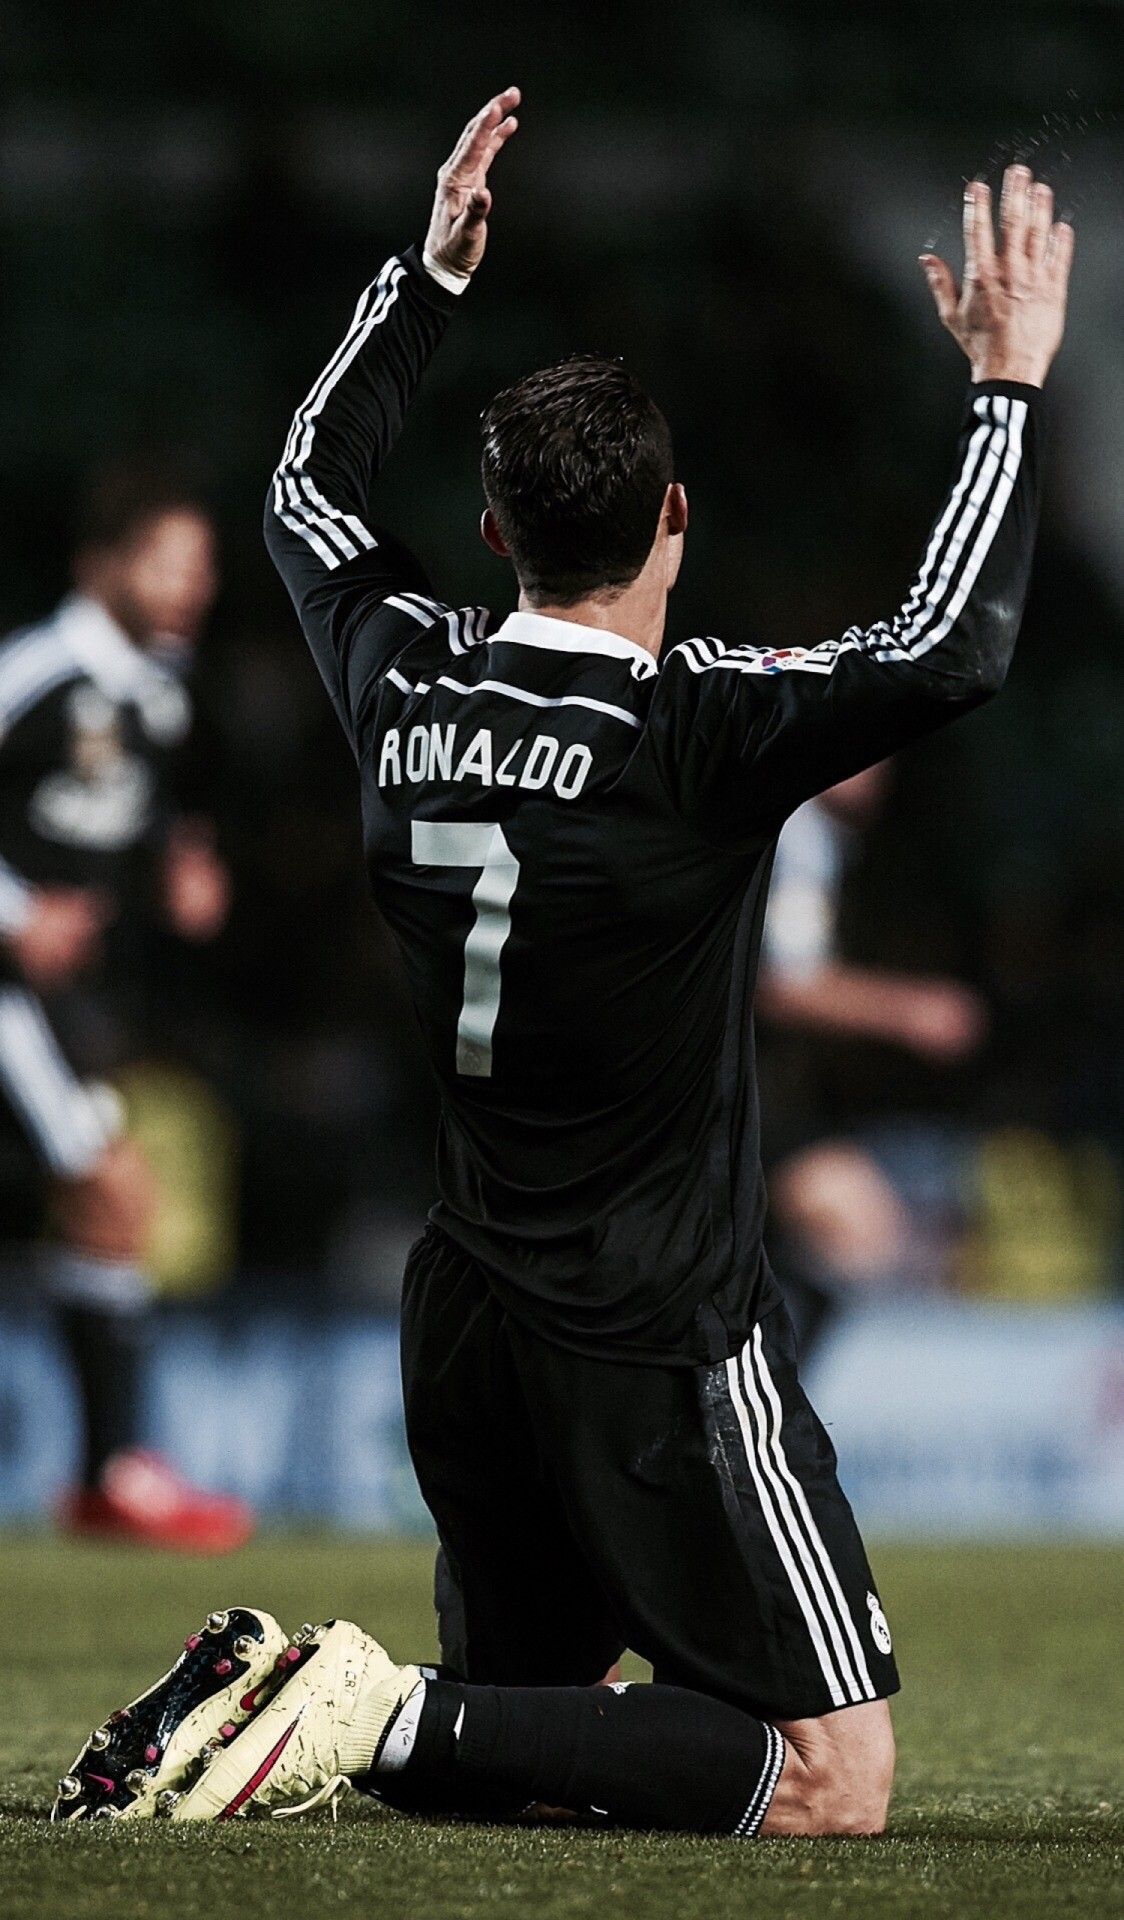 Cristiano Ronaldo Wallpaper for iPhone